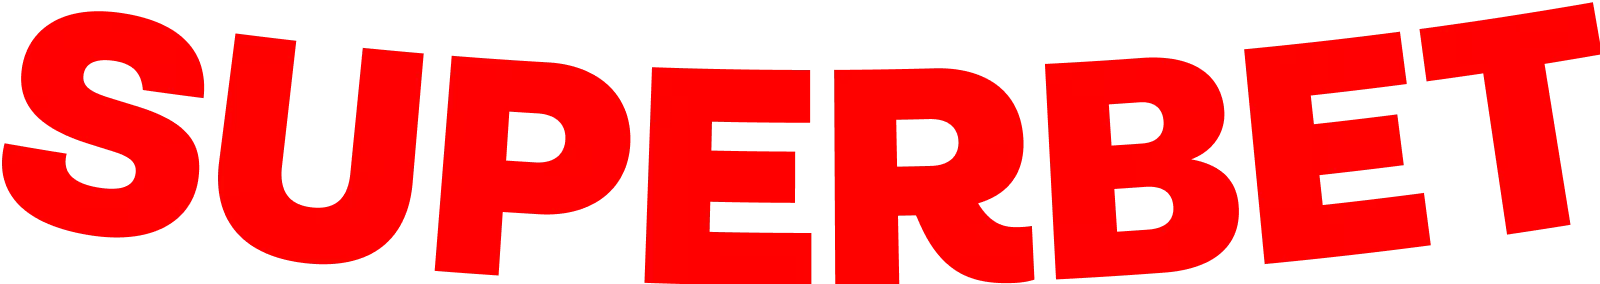  Superbet red logo 